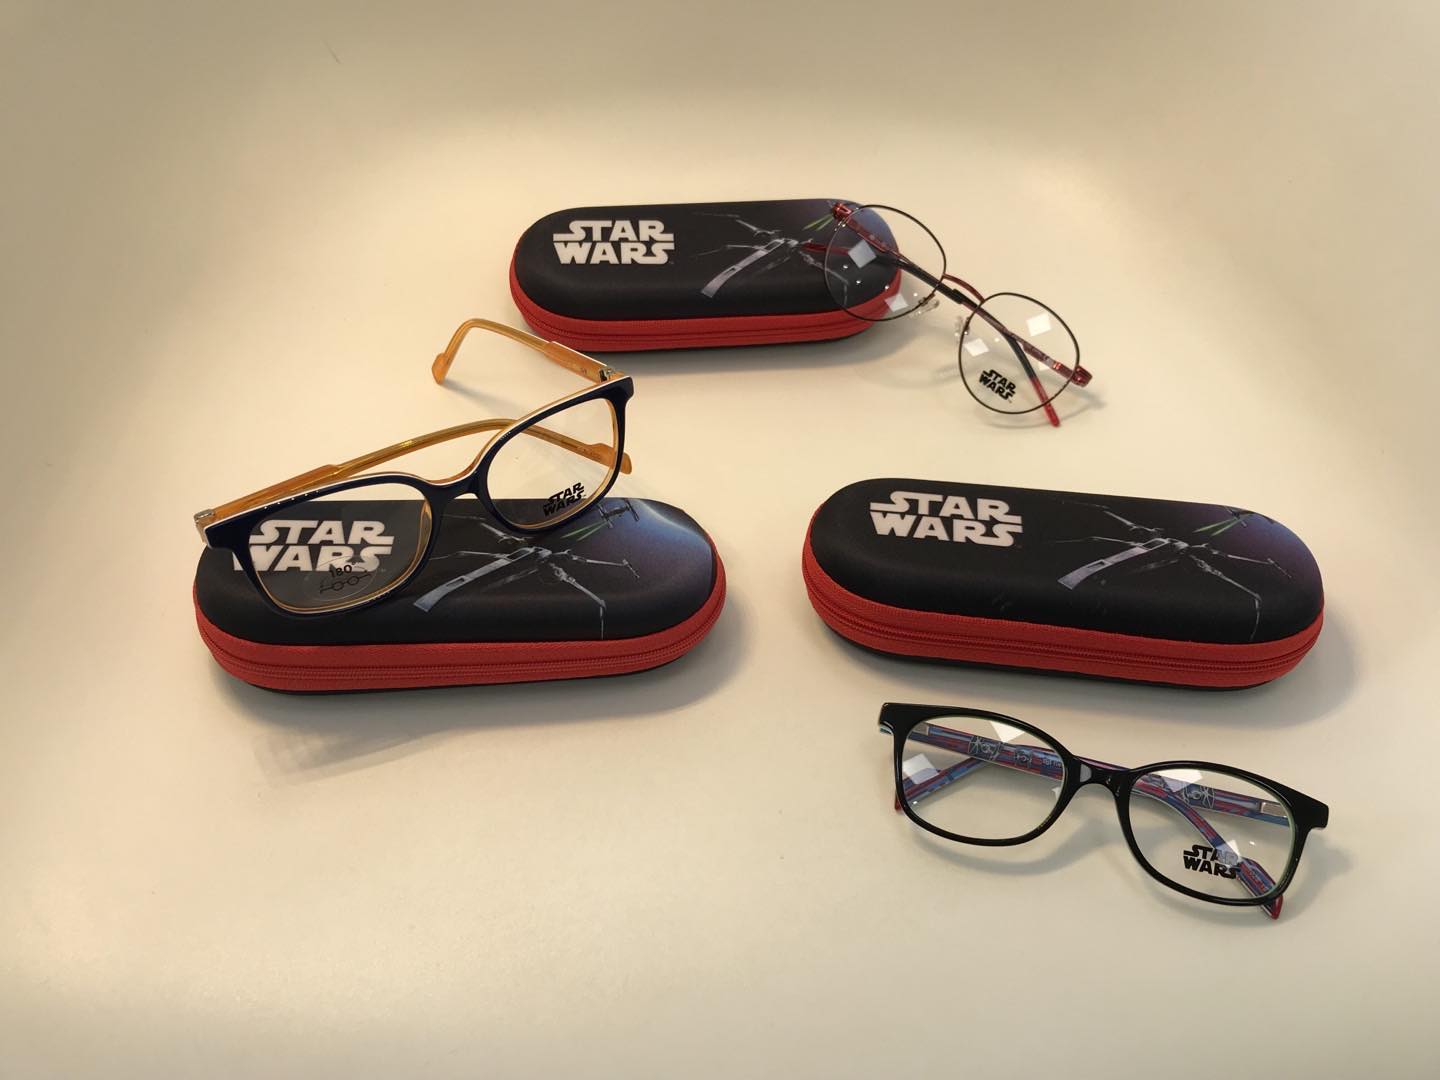 Möge die Macht mit dir sein!🛸🤖
Die neuen Star Wars Brillen liegen für jeden jungen Padawan bereit, der einmal ein großer...